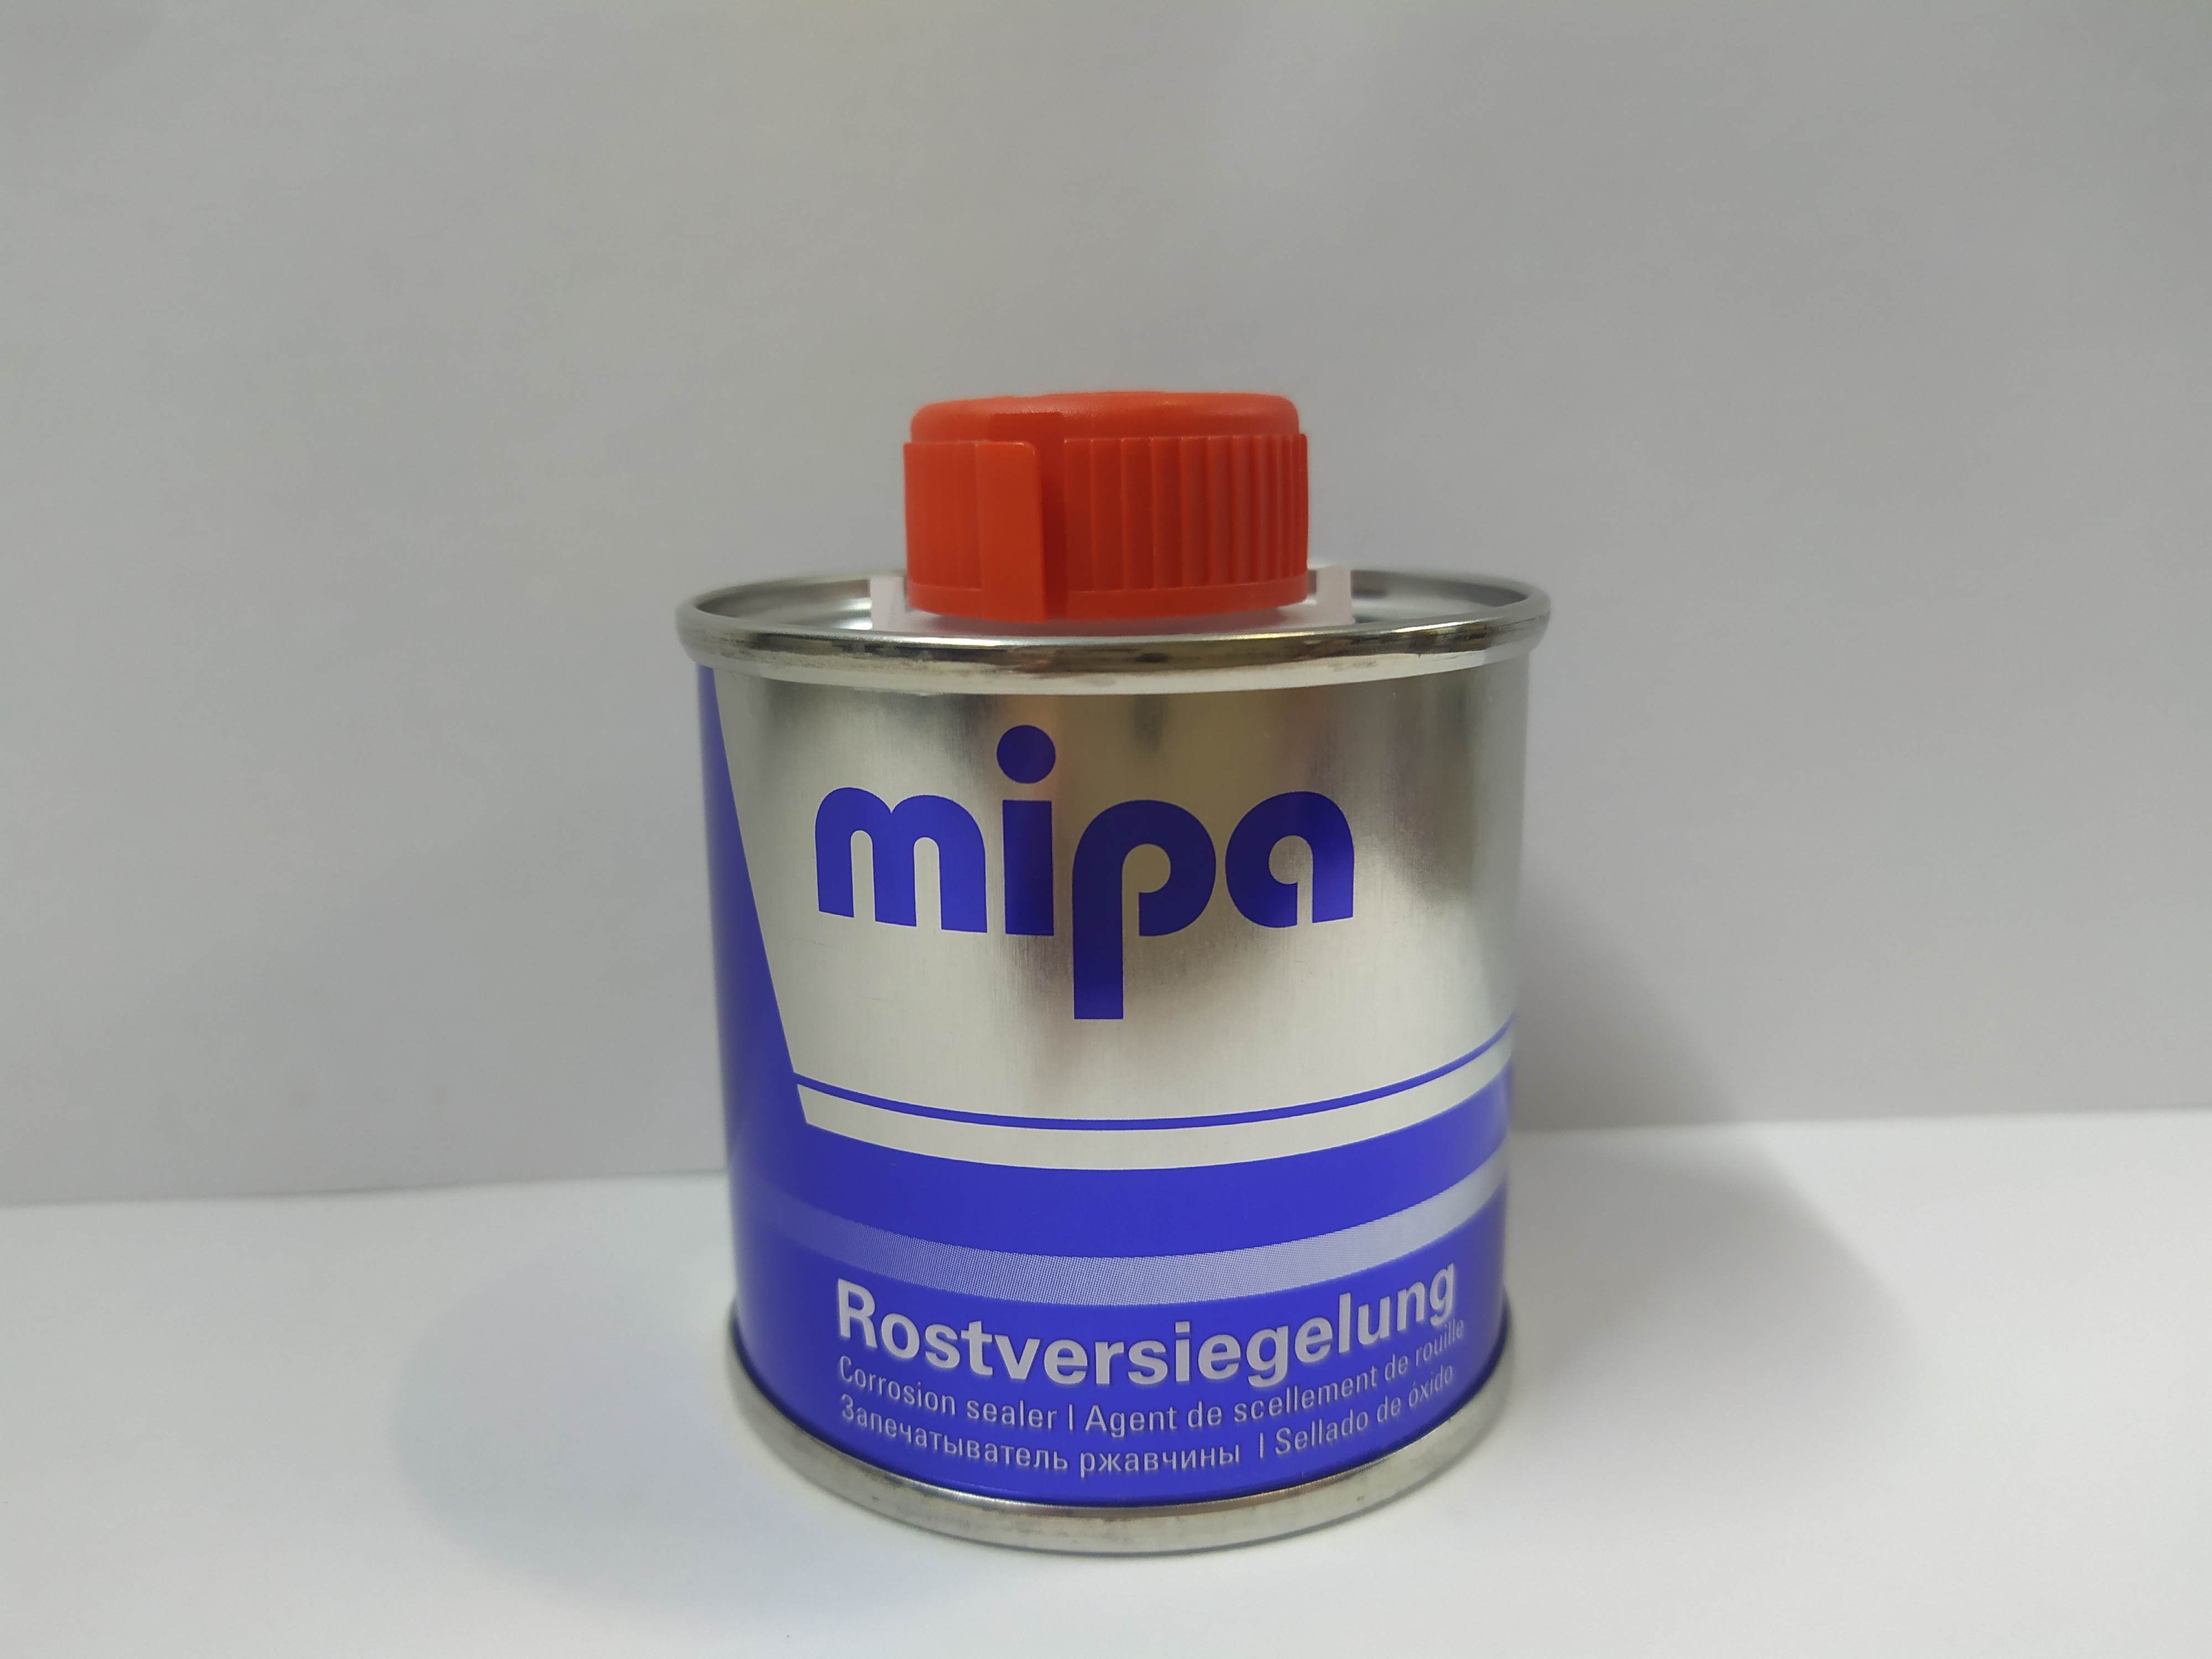 Запечатыватель ржавчины mipa отзывы. Запечатыватель ржавчины MIPA. Запечатыватель ржавчины MIPA 100ml. Запечатыватель ржавчины MIPA RUSTSTOP. MIPA запечатыватель ржавчины инструкция.